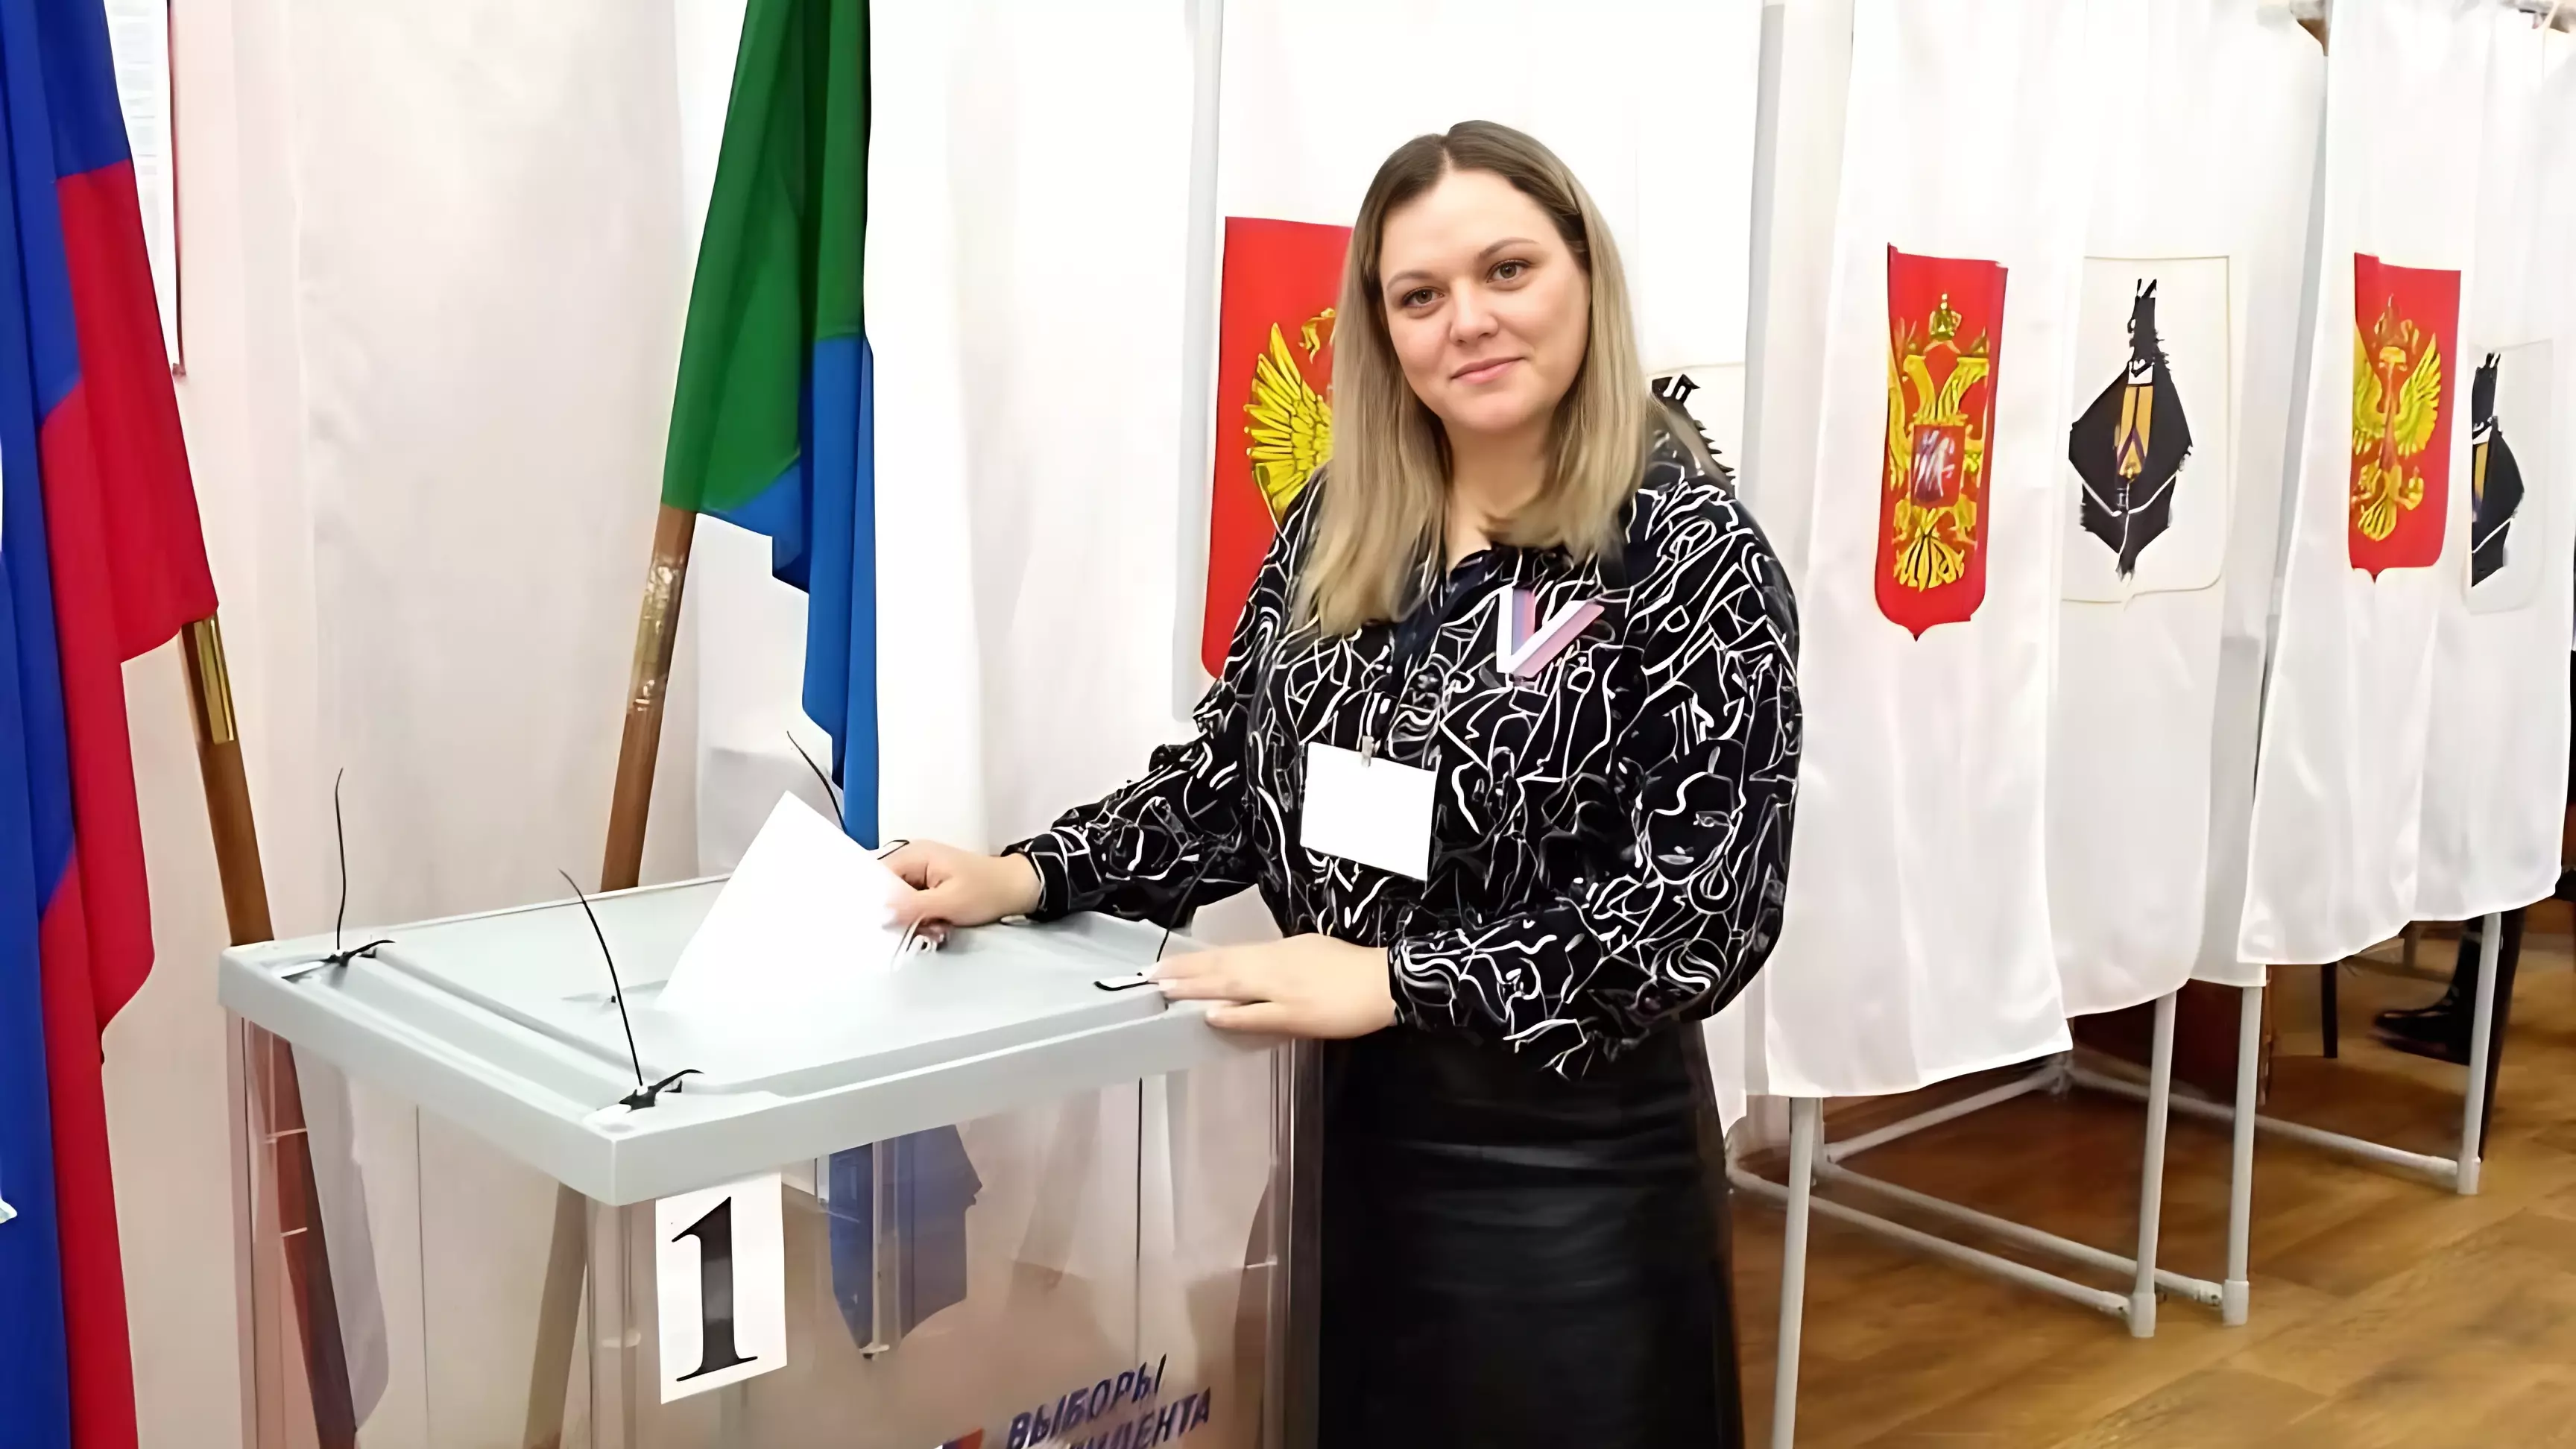 Вброс бюллетеней на выборах в Хабаровском крае оказались фэйком